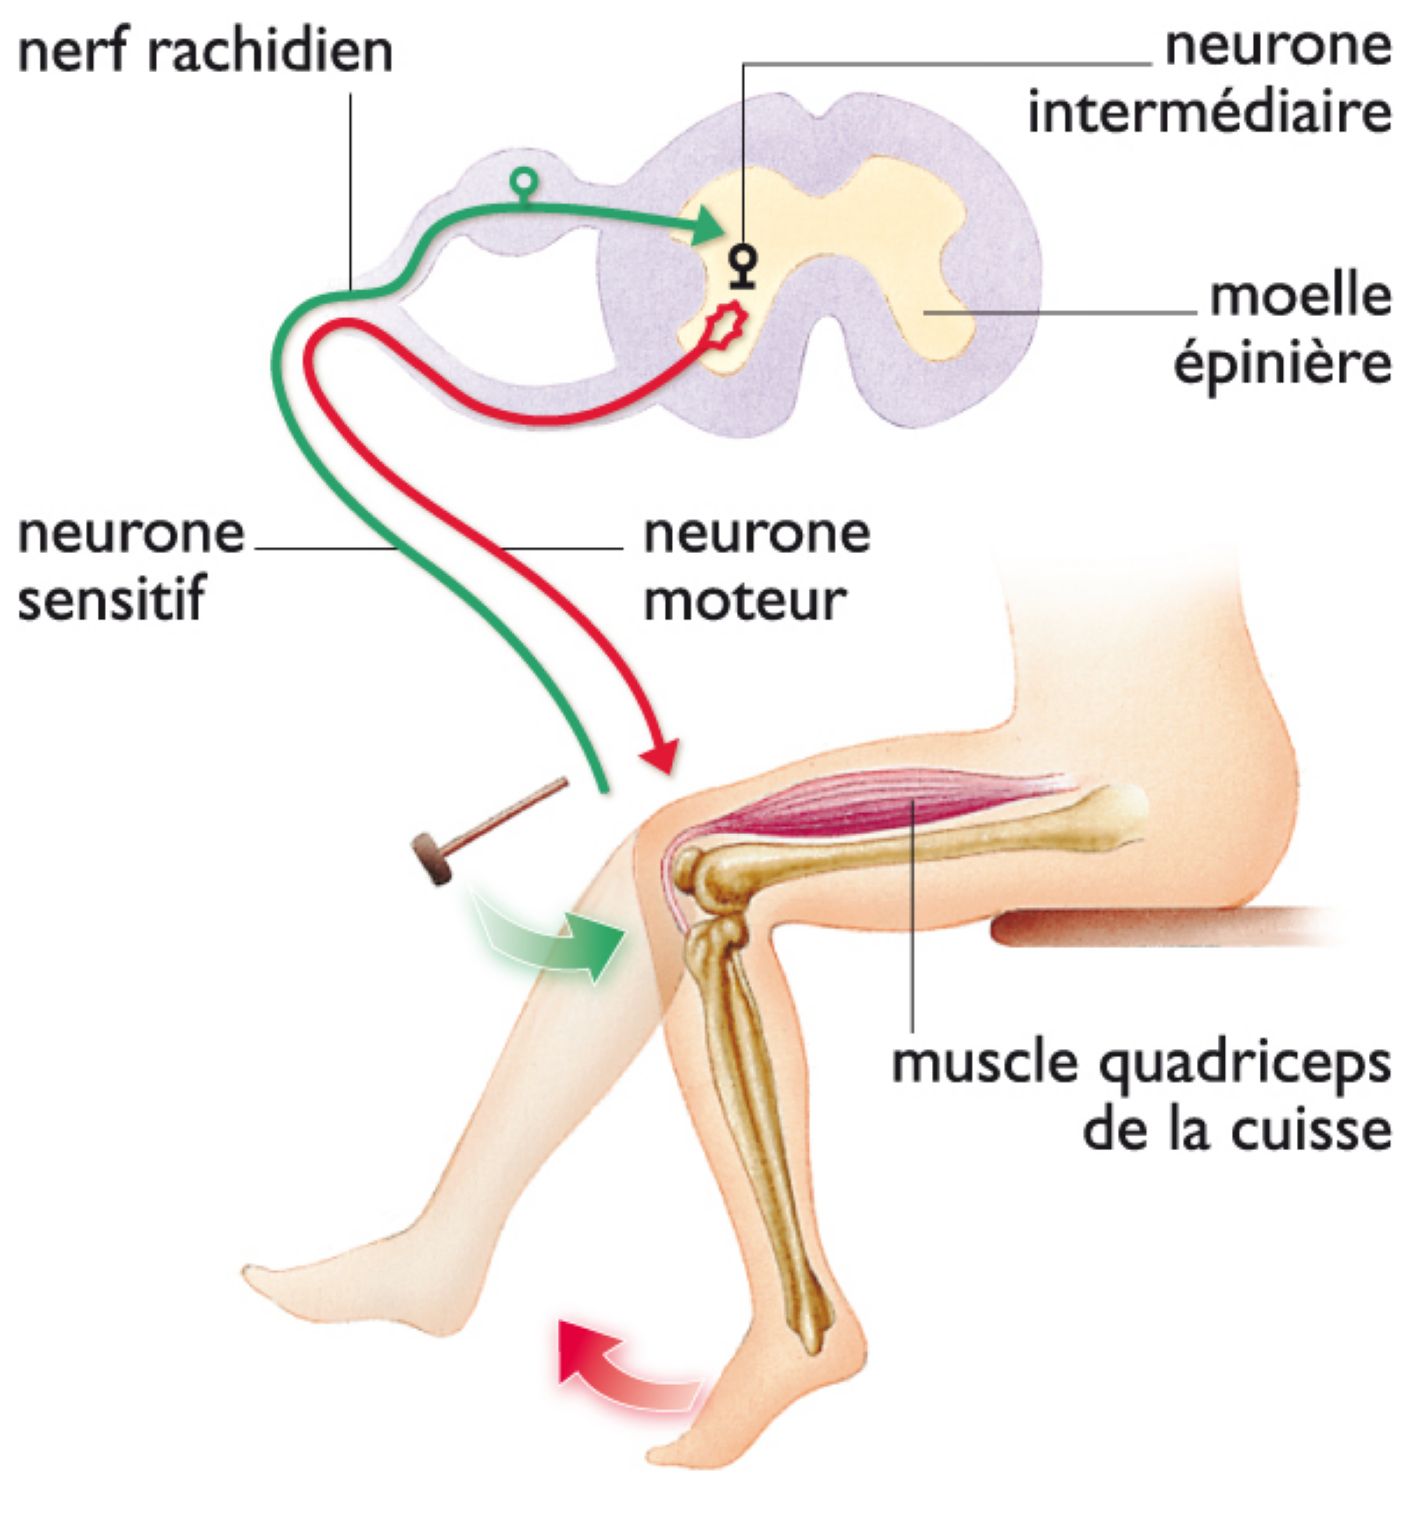 le réflexe rotulien (un léger coup sur la rotule entraîne l’extension involontaire de la jambe ; le message nerveux est véhiculé par les neurones, contenus dans les nerfs, jusqu’à la moelle épinière, sans passer par le cerveau)